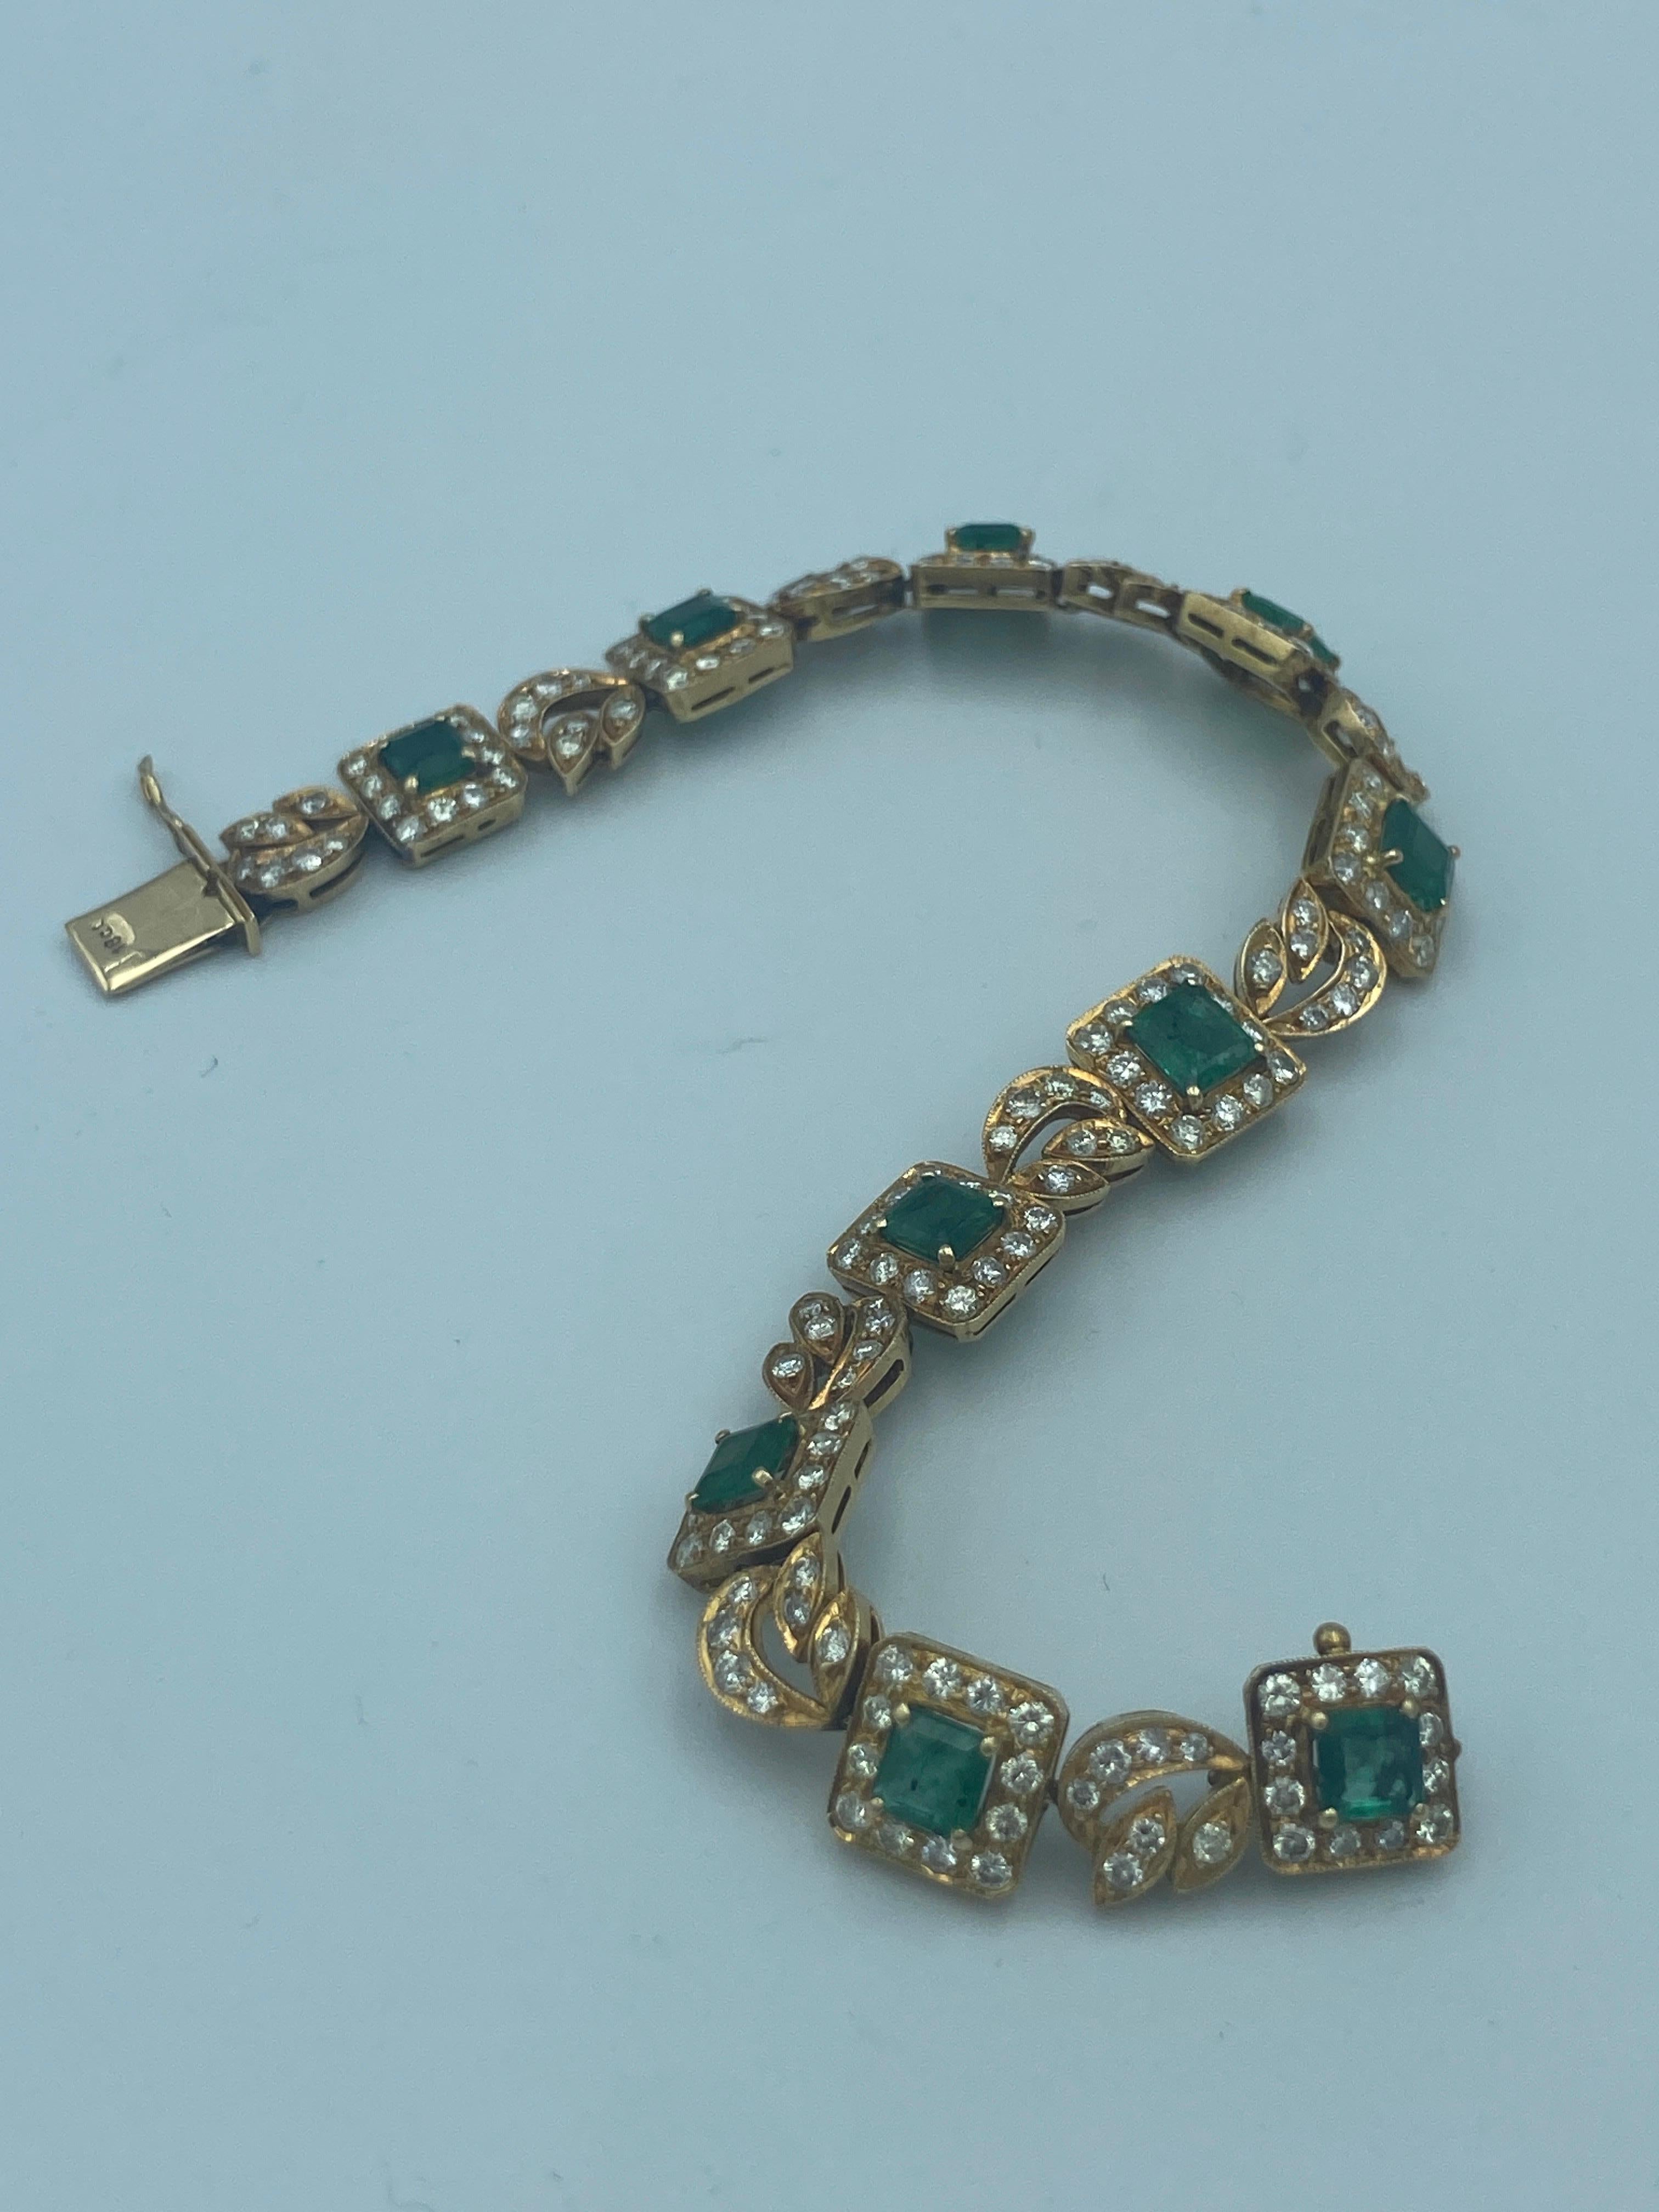 Dieses elegante, in den 1960er Jahren in Europa gefertigte Armband aus 18 Karat Gold, Diamanten und kolumbianischen Smaragden ist ein reizvolles Stück. Er besteht aus etwa 6,5 Karat Diamanten und etwa 6 Karat Smaragden im Asscher-Schliff. Es ist ein